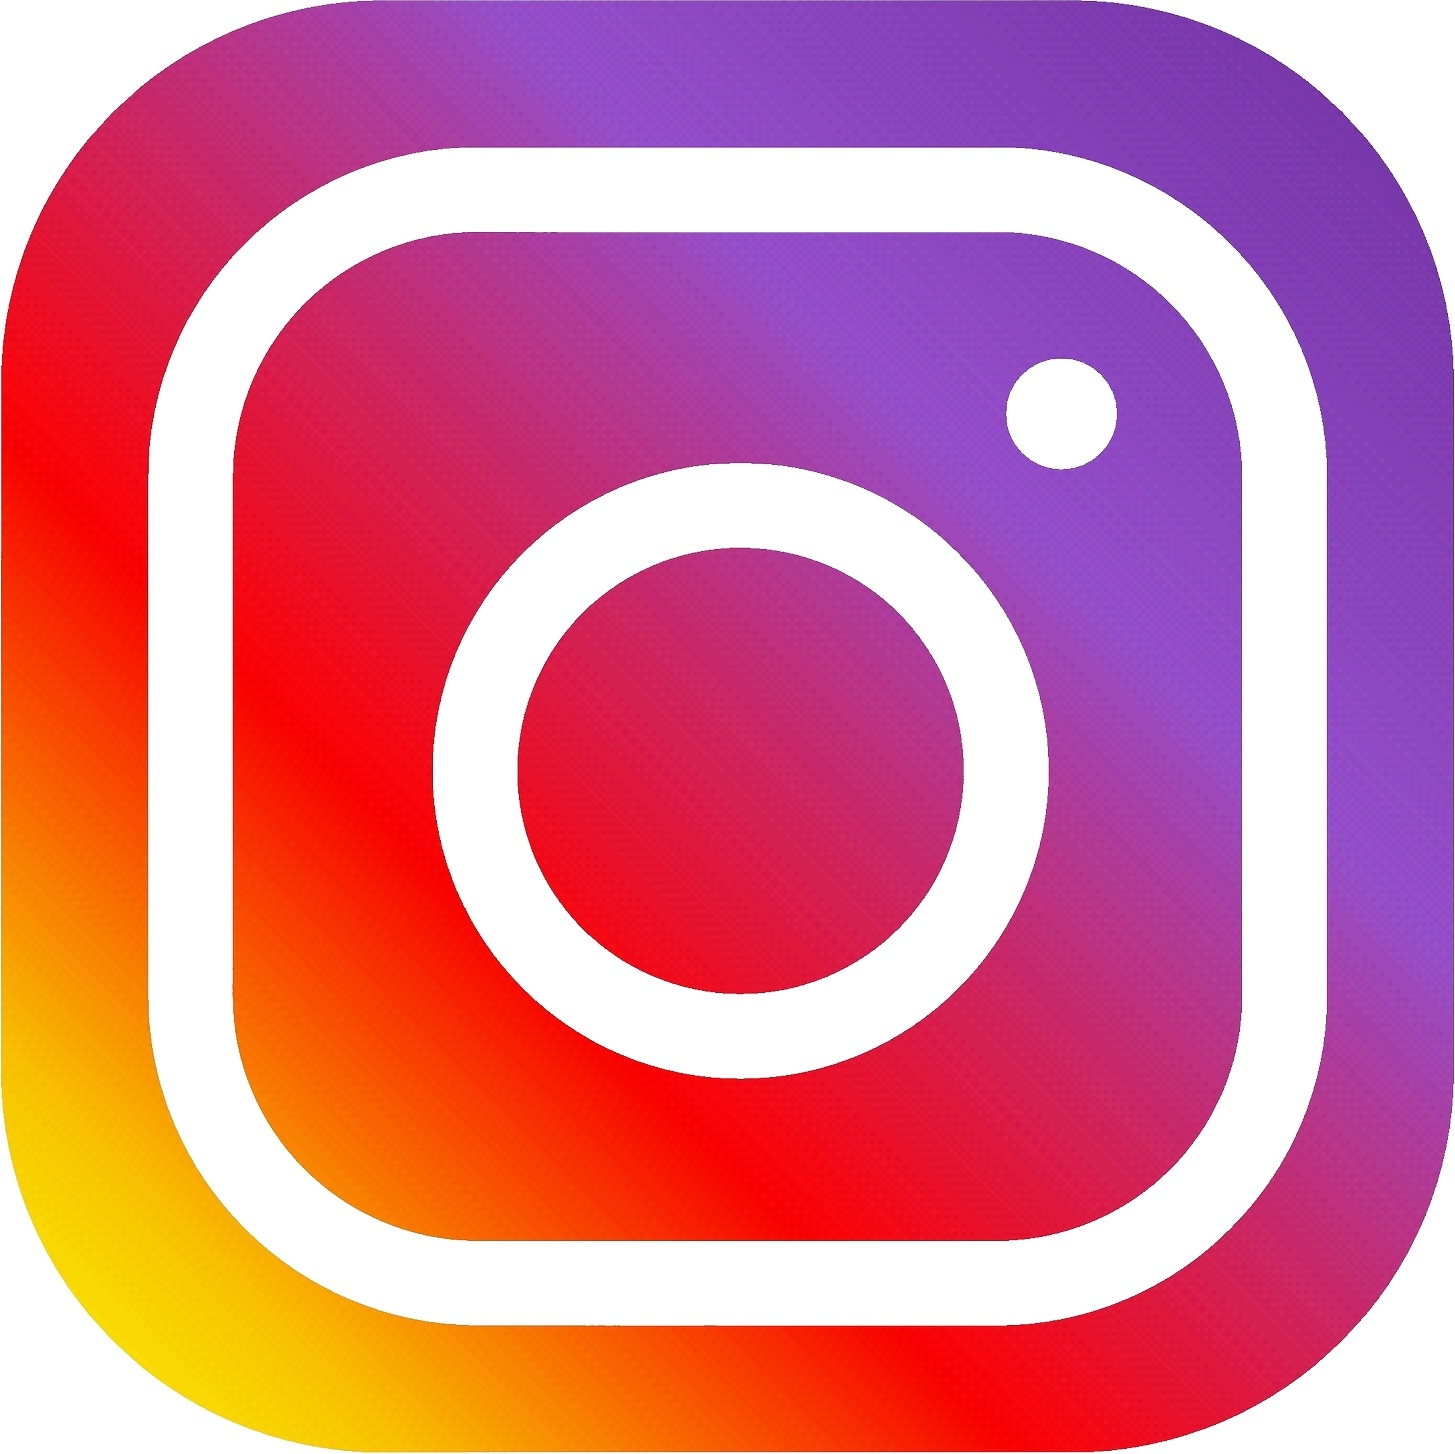 社交平台Instagram被曝收购域名IGTV.com